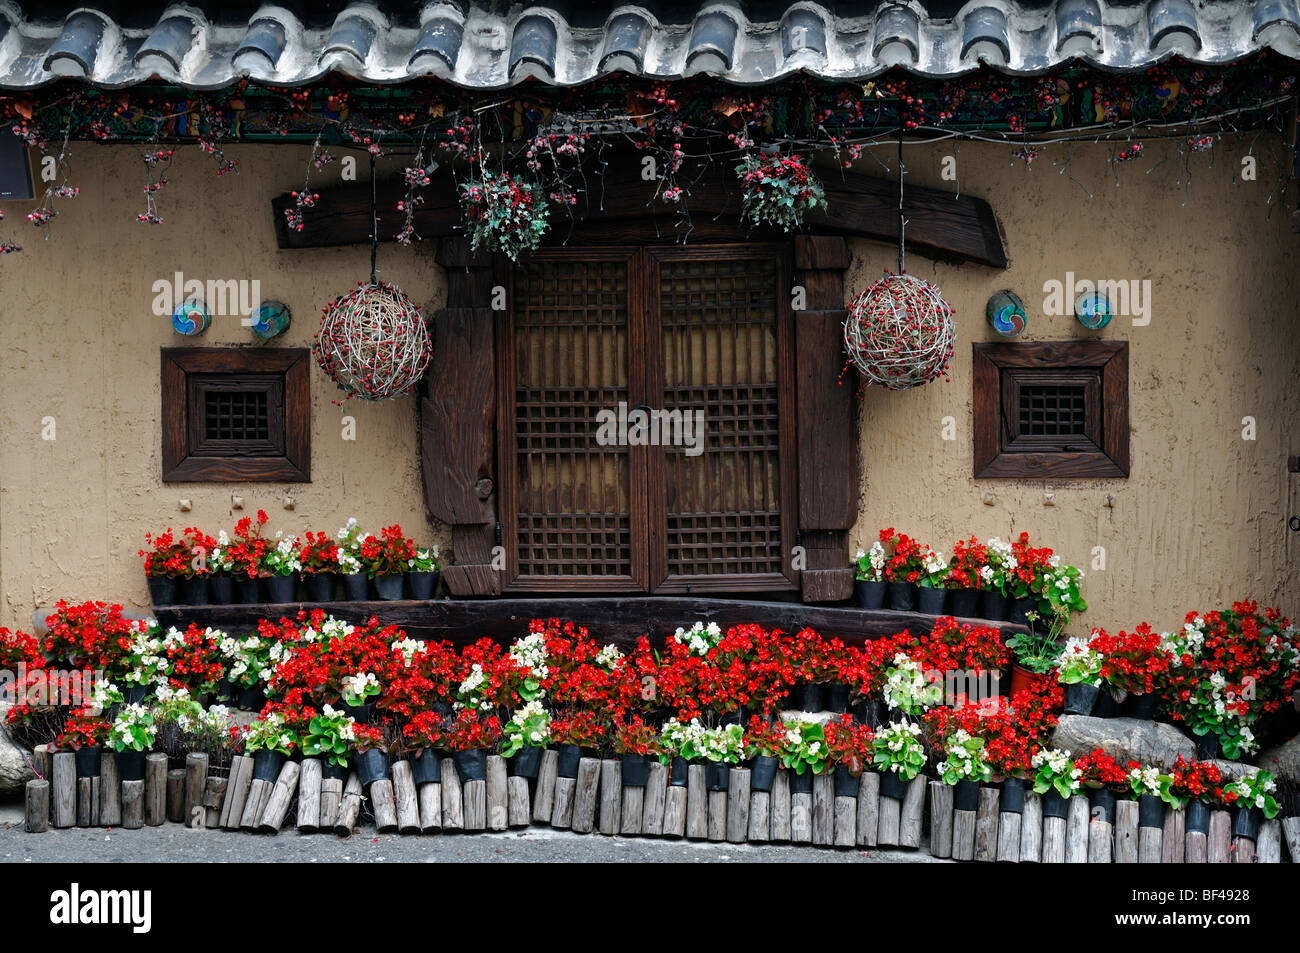 Fleurs coloré à l'extérieur d'une maison avec ses volets aux fenêtres d'arrêt dong daegu Corée du Sud Banque D'Images